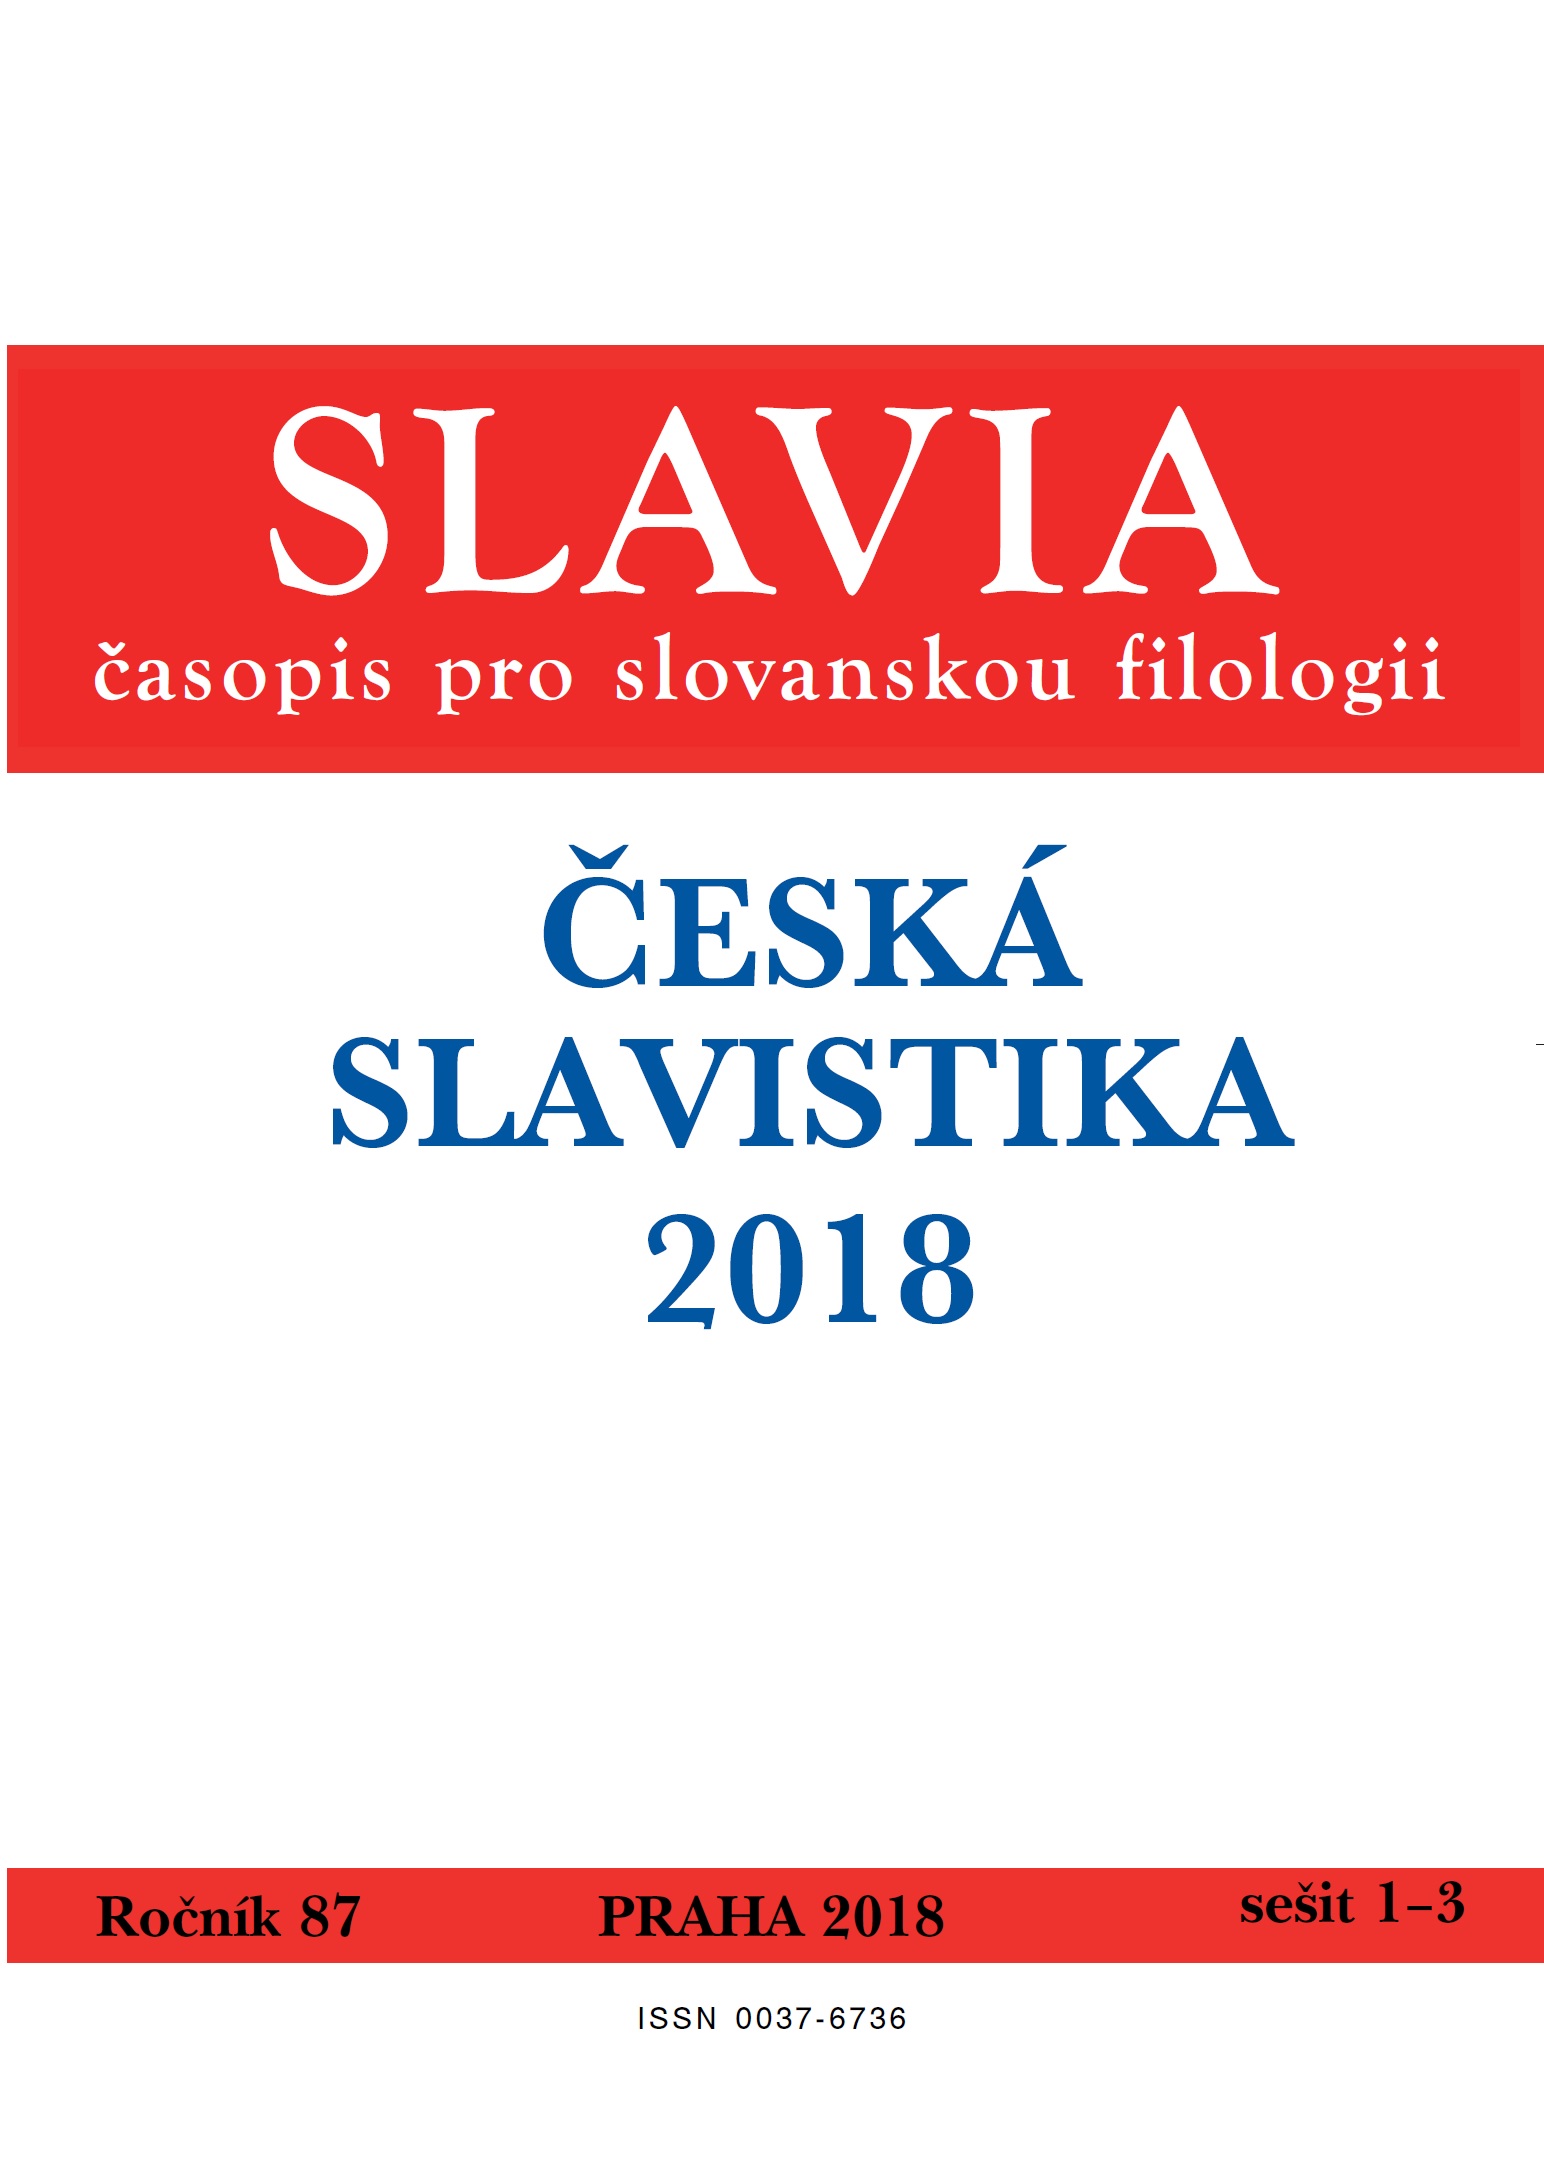 Odraz filosofické tvorby T. G. Masaryka u ruských exilových filosofů v meziválečném Československu